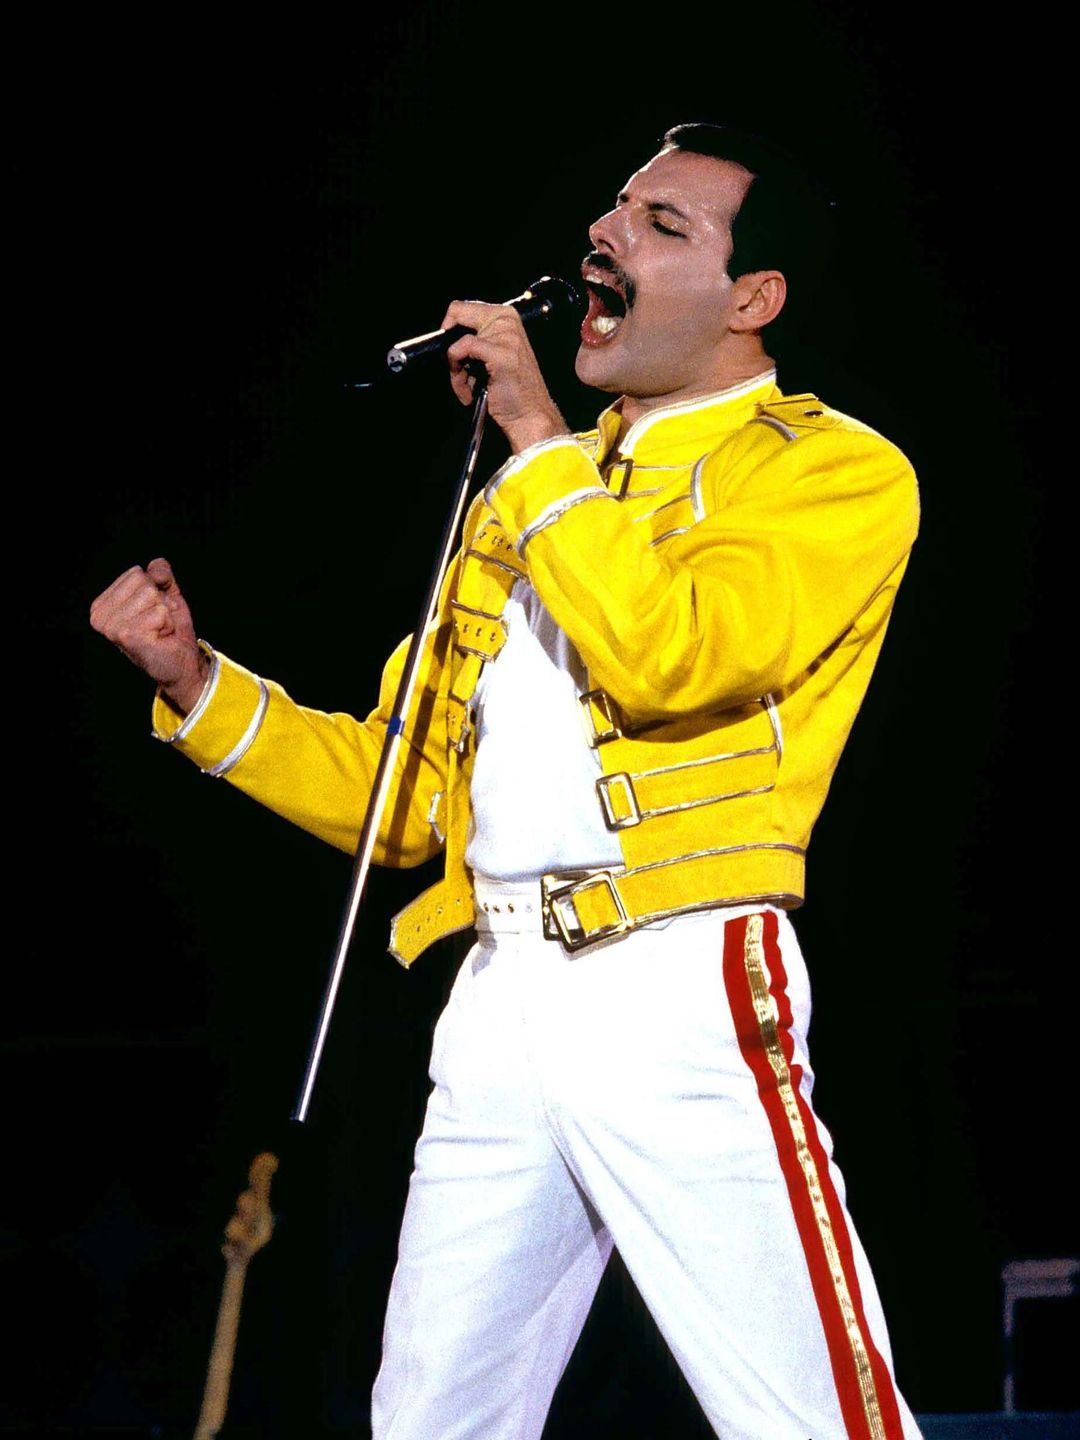 Freddie Mercury in his youth